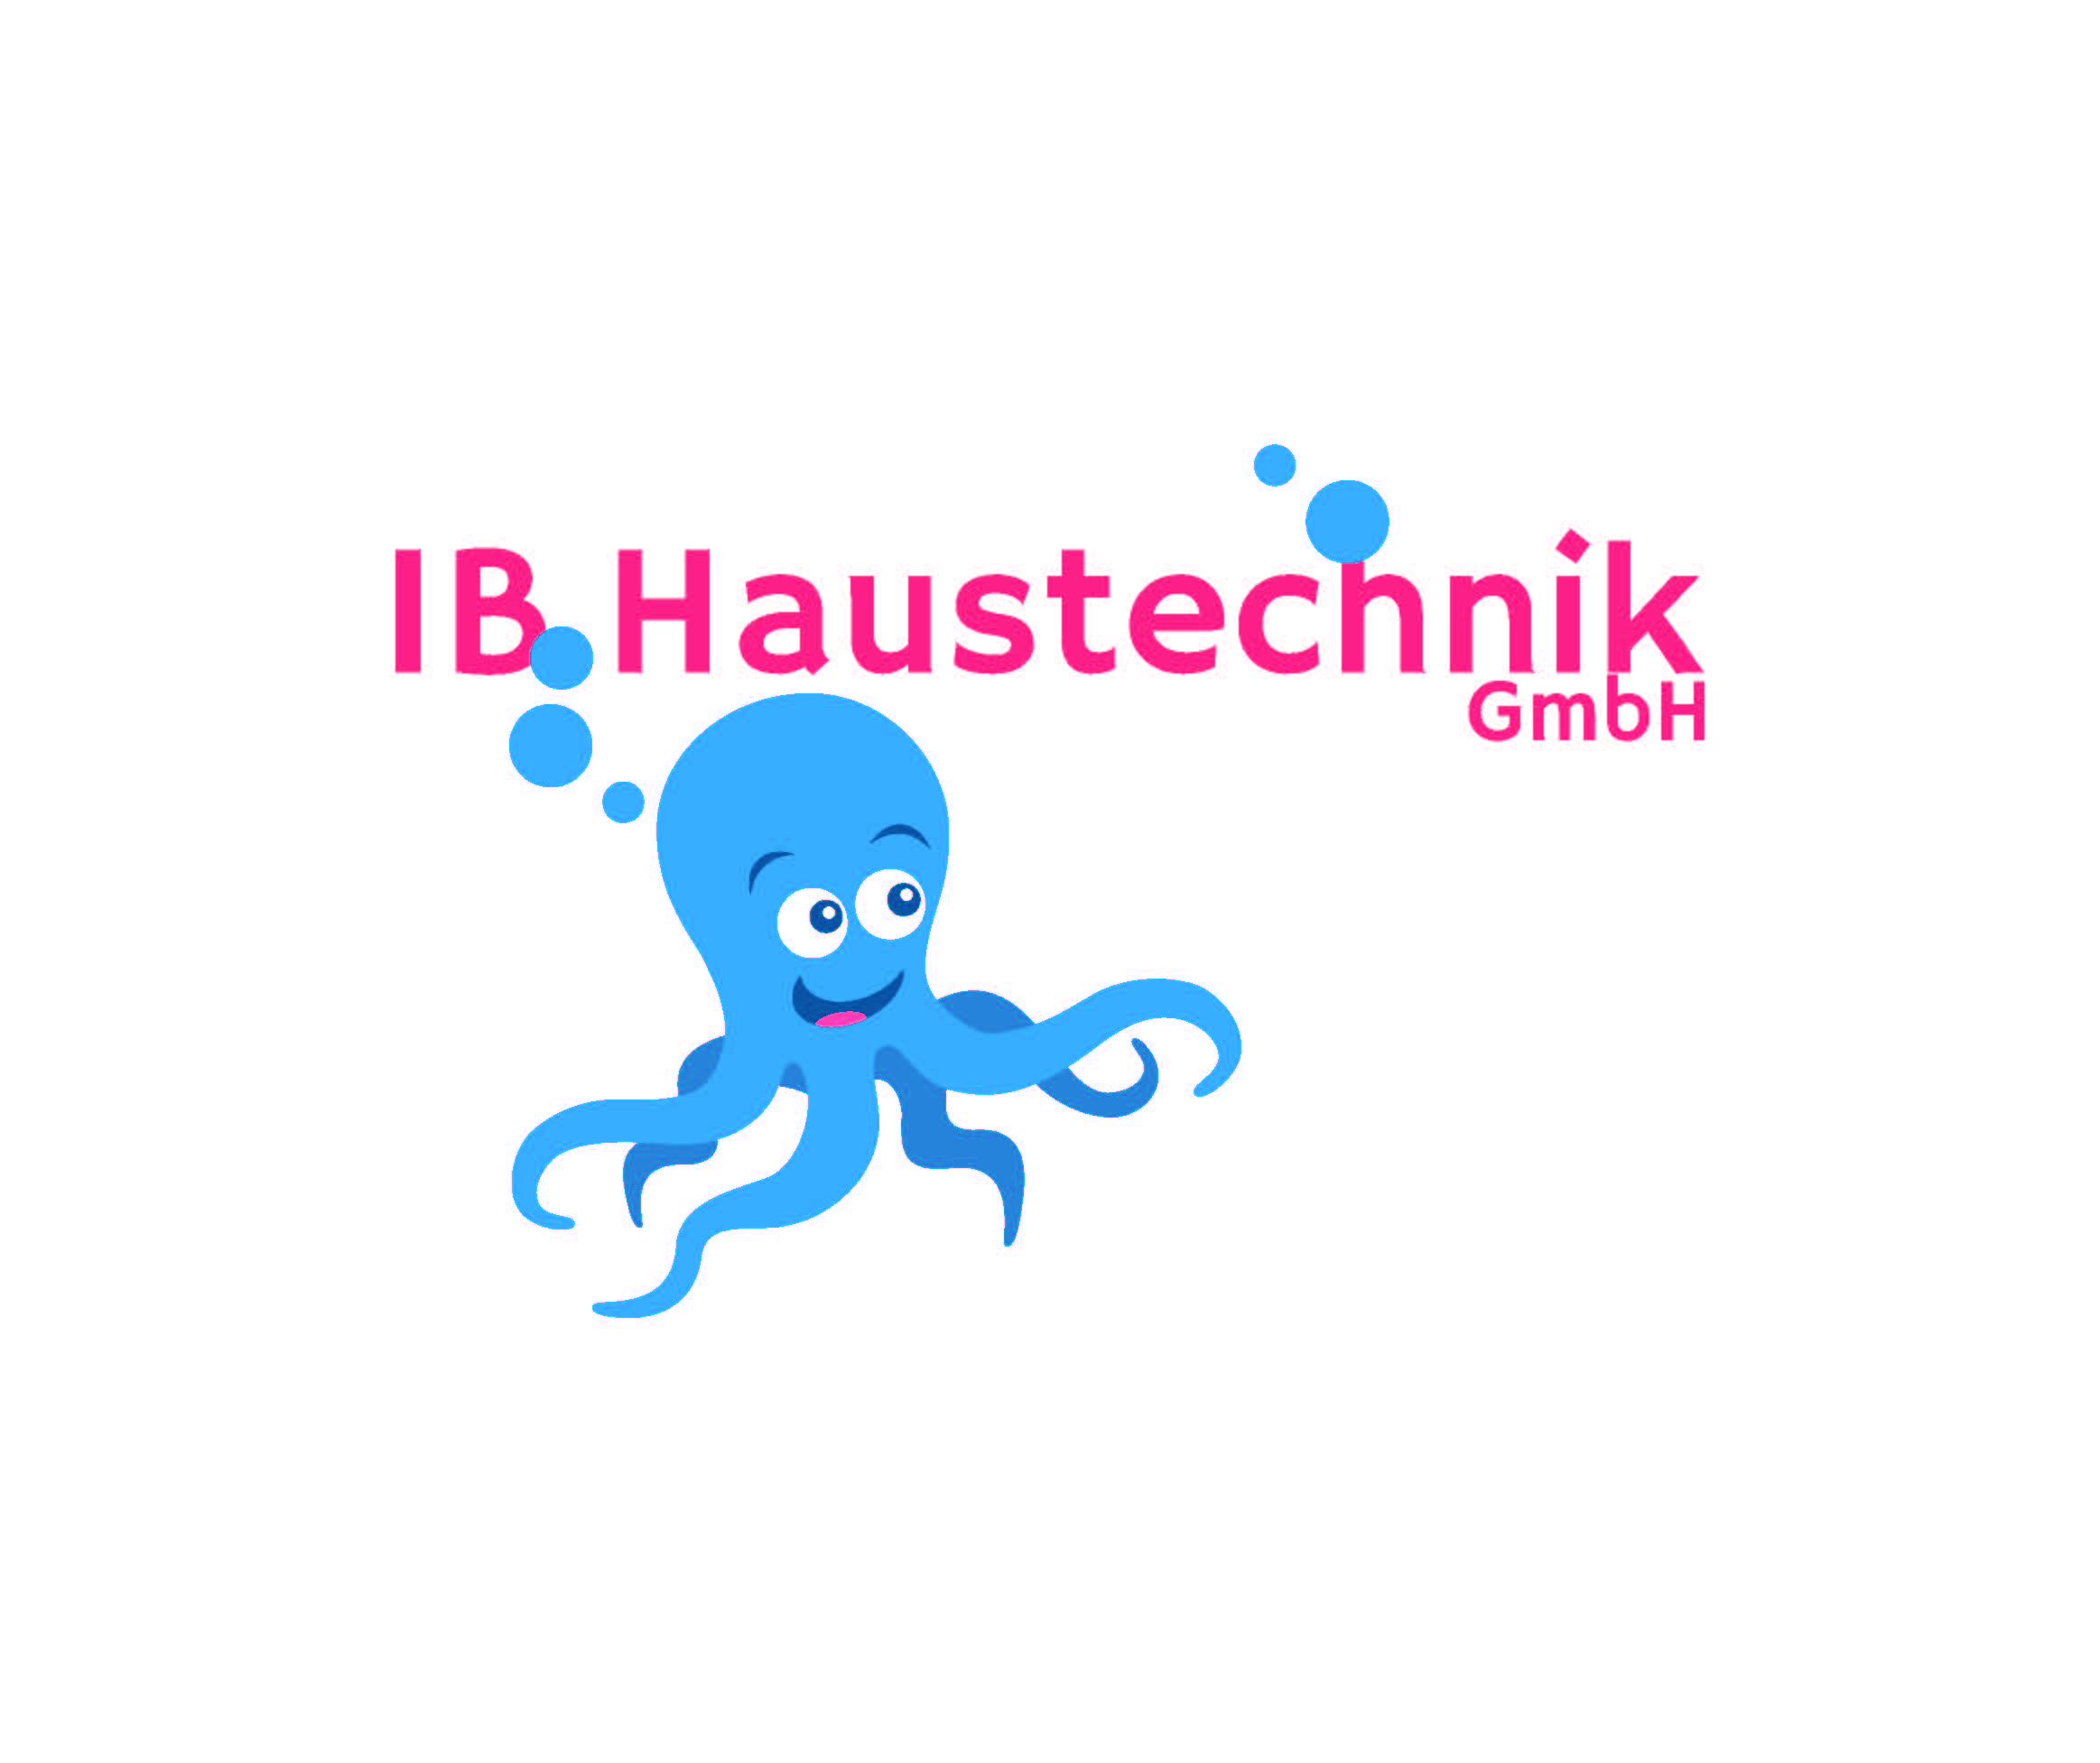 IB Haustechnik GmbH